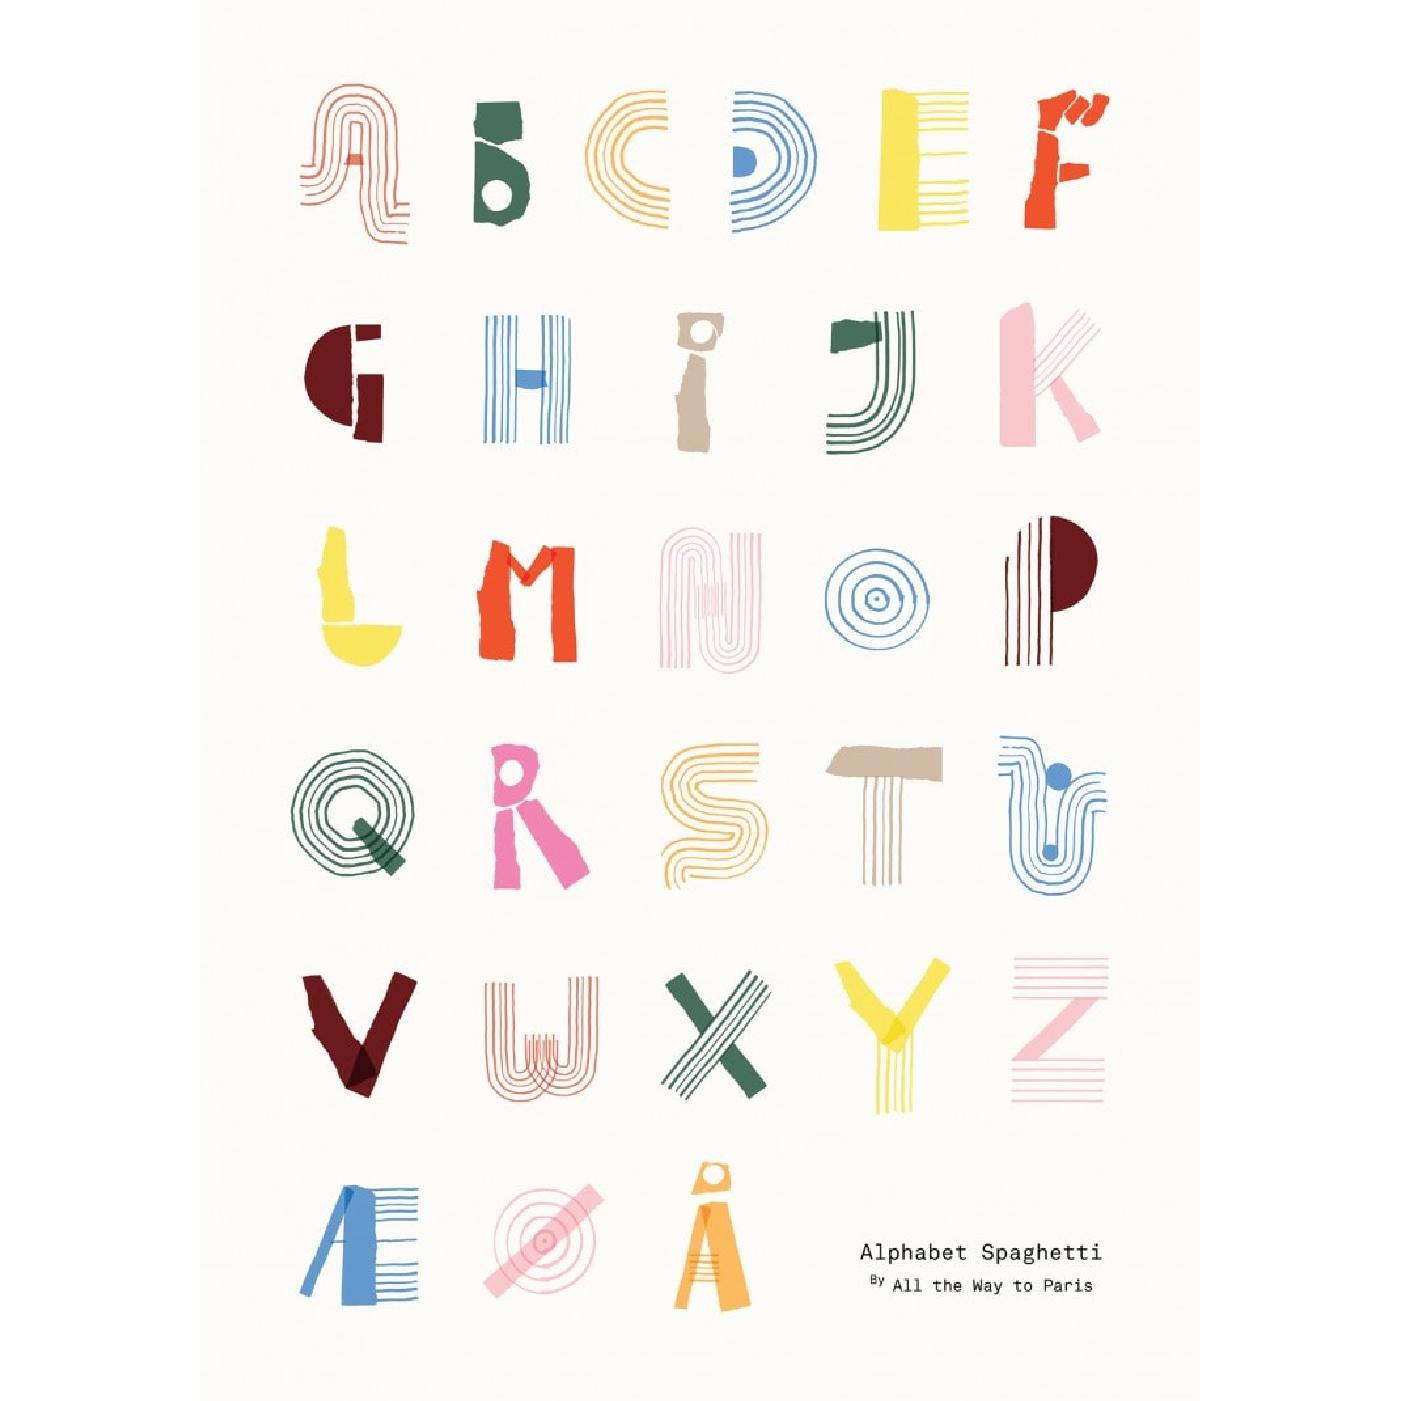 Papierowe zbiorowe alfabet spaghetti dk plakat 50x70 cm, wielokolorowy